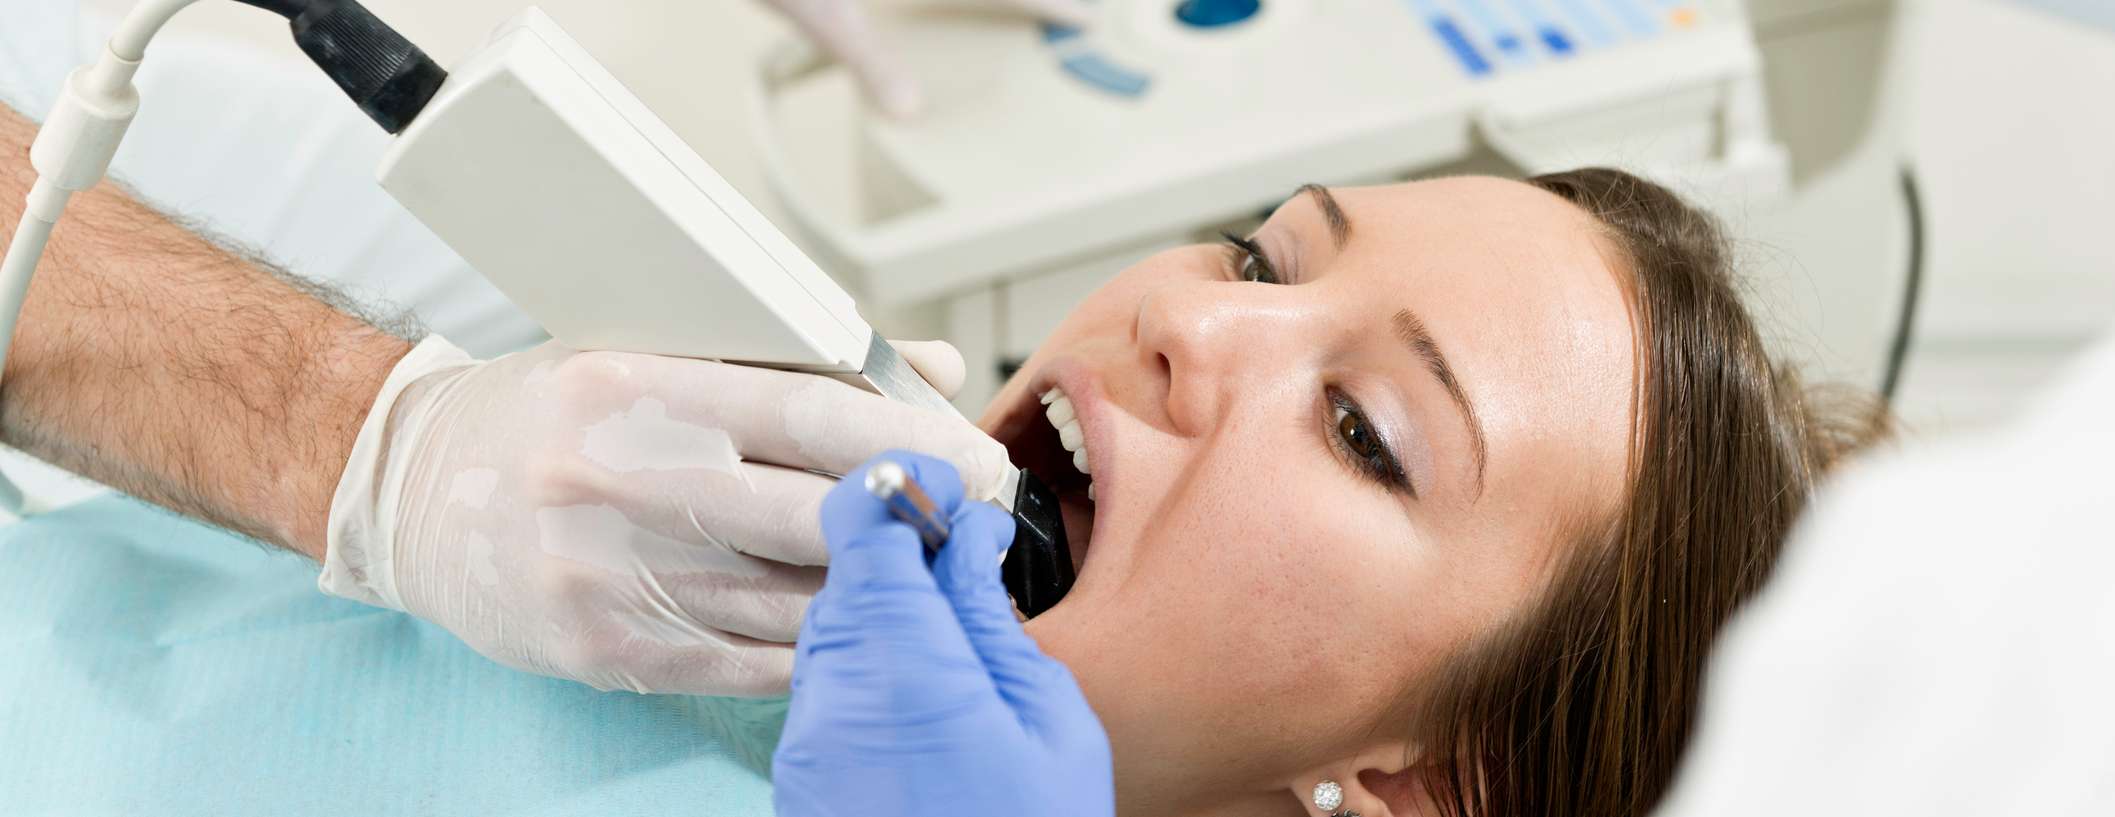 Eine Frau befindet sich bei einer Untersuchung beim Zahnarzt und öffnet den Mund